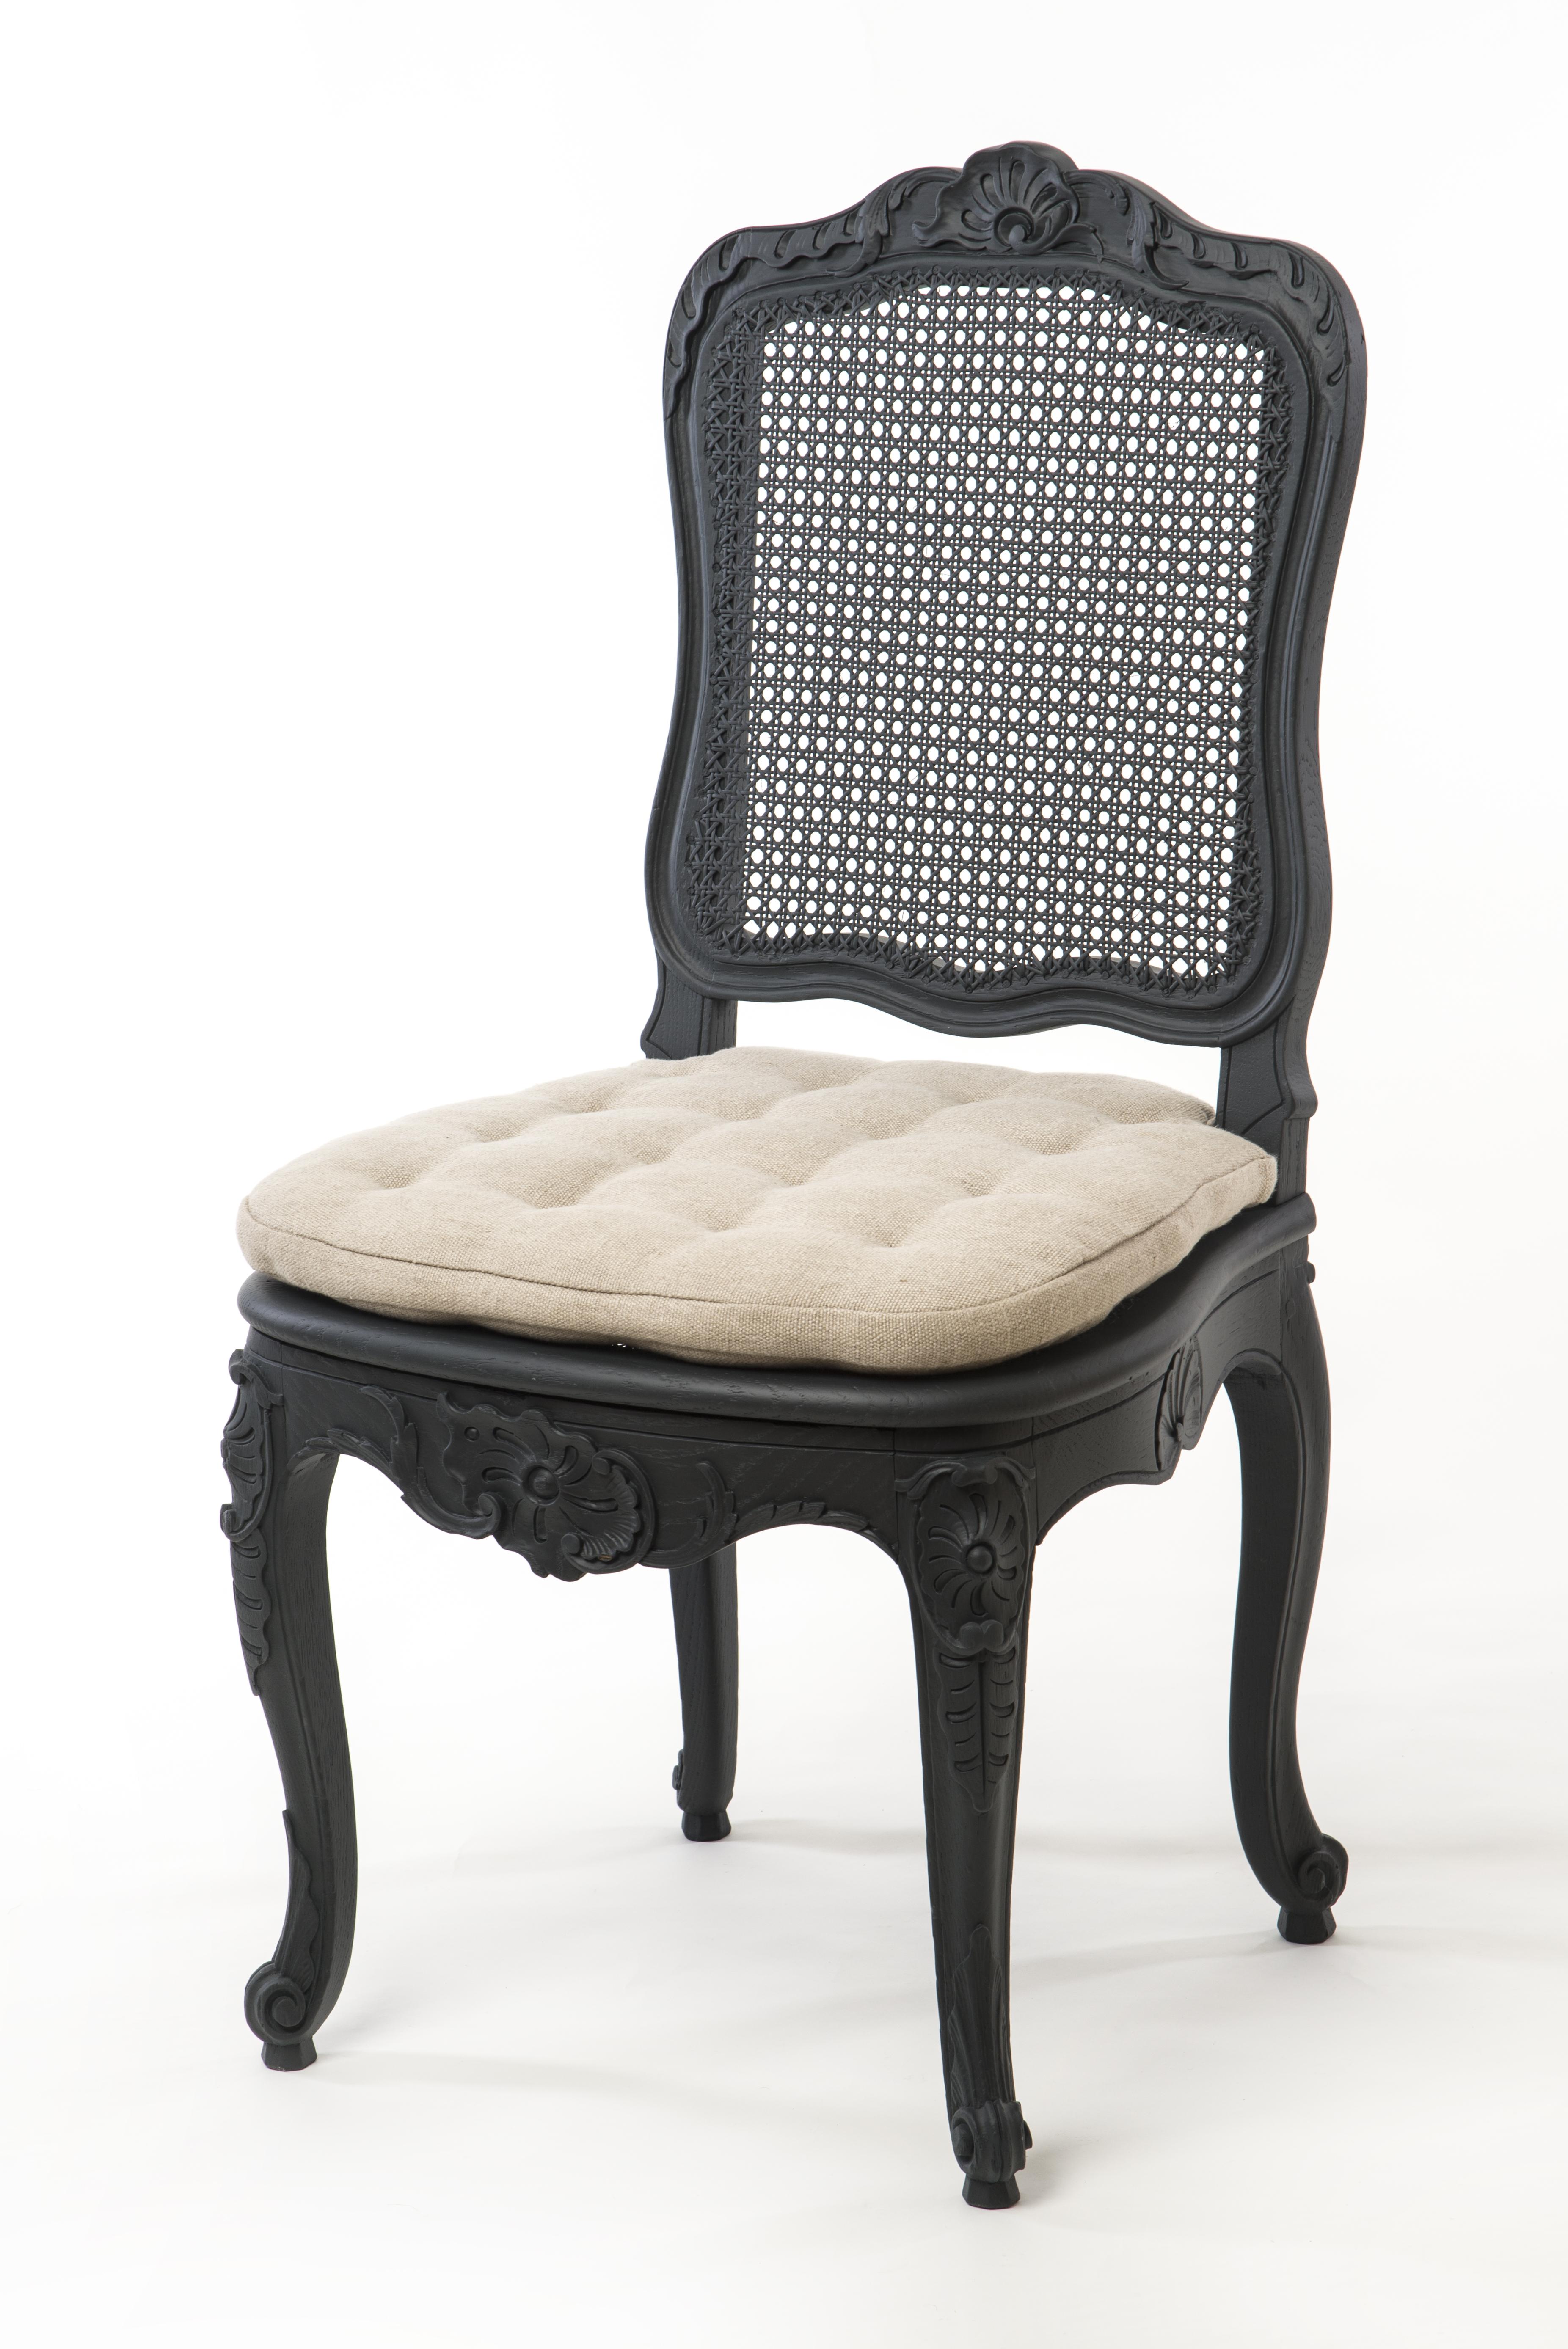 Dieses Set aus 5 schönen Stühlen im gustavianischen Stil ist in elegantem Schwarz gehalten. Die leicht geschwungenen Beine sowie der Sitzrahmen und die Rückenlehne sind mit raffinierten Holzschnitzereien versehen, die diese Stühle wirklich